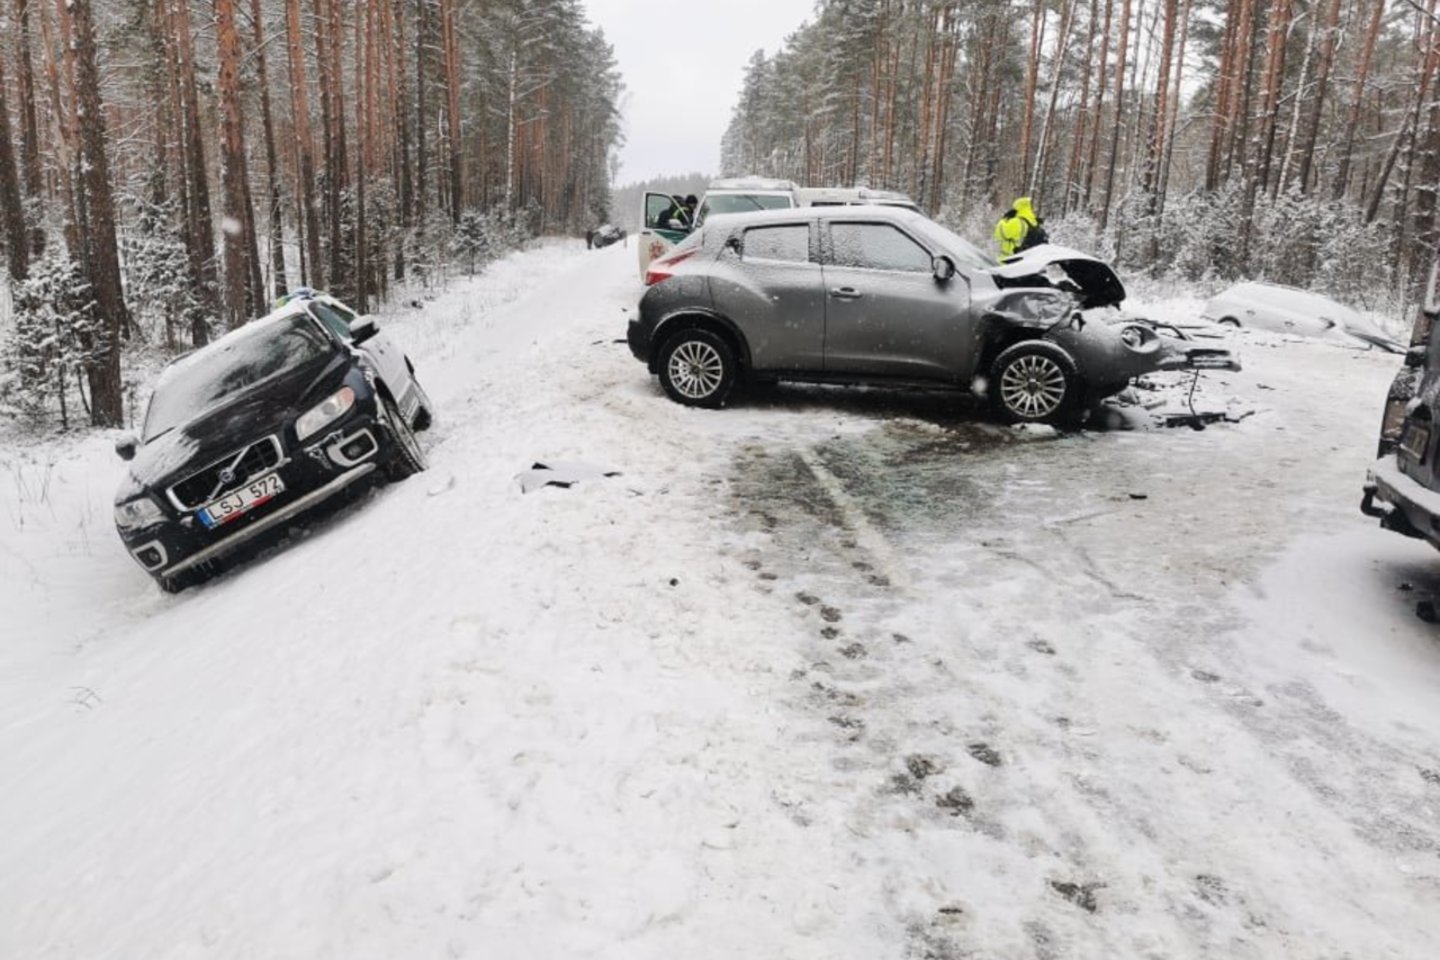  Švenčionių rajone per masinę avariją buvo sužeisti 4 žmonės, vienas prispaustas suniokotame automobilyje. <br> T.Bauro nuotr. 